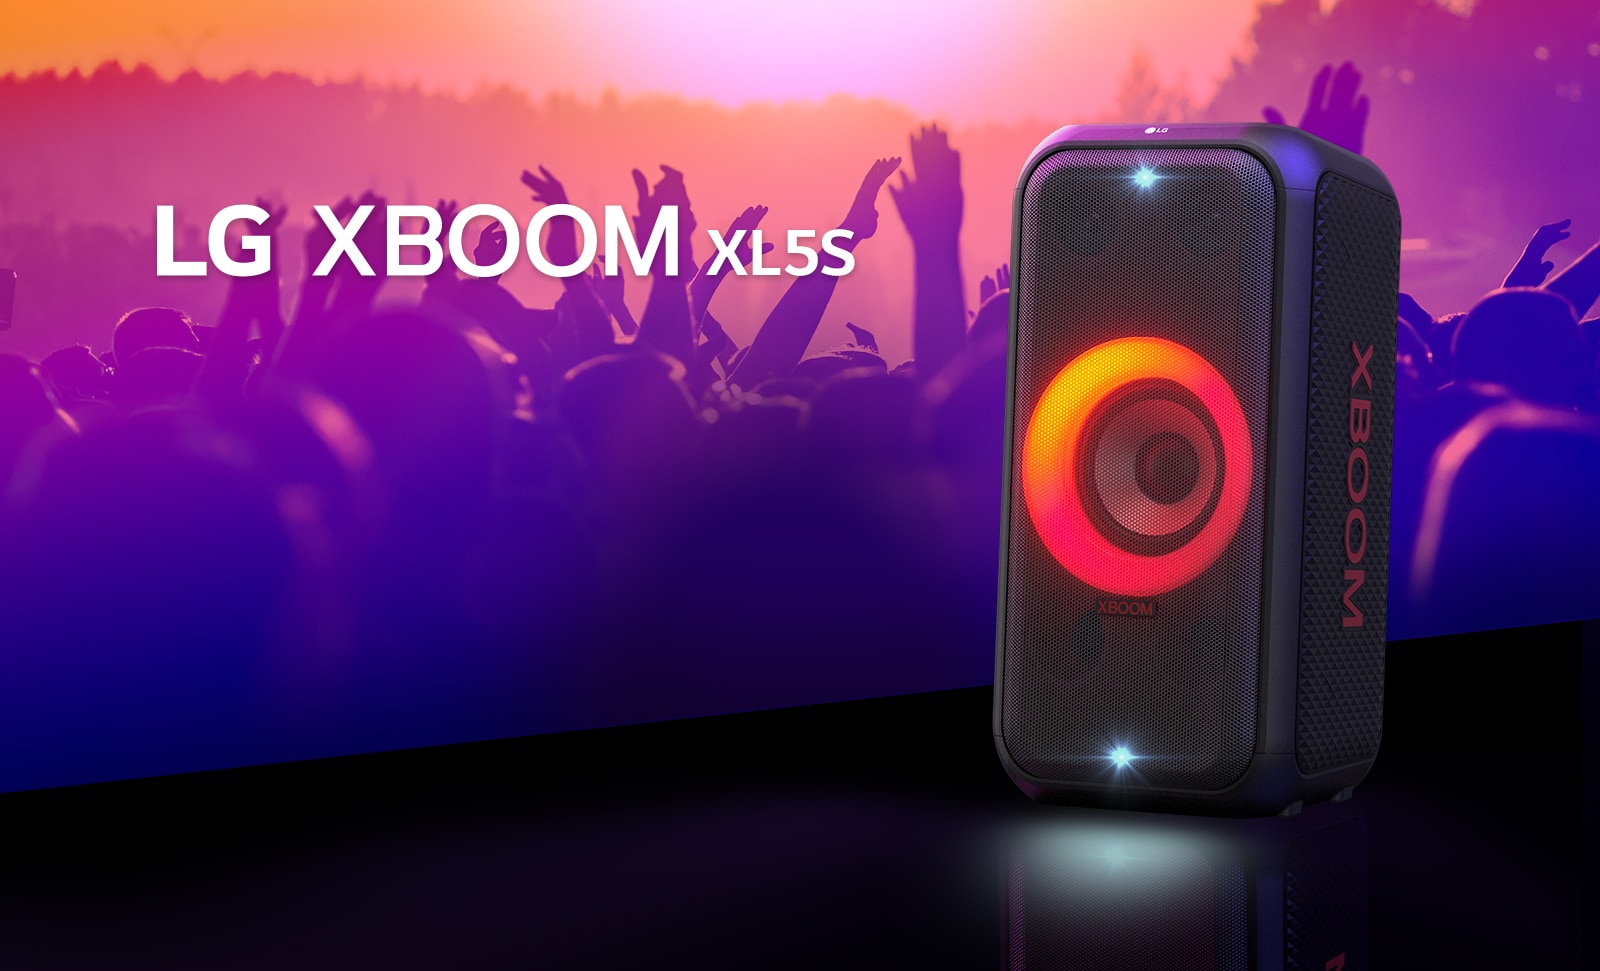 LG XBOOM XL5S padėtas ant scenos ir jame įjungtas raudonos bei oranžinės spalvų pereinantis apšvietimas. Už scenos žmonės mėgaujasi muzika.